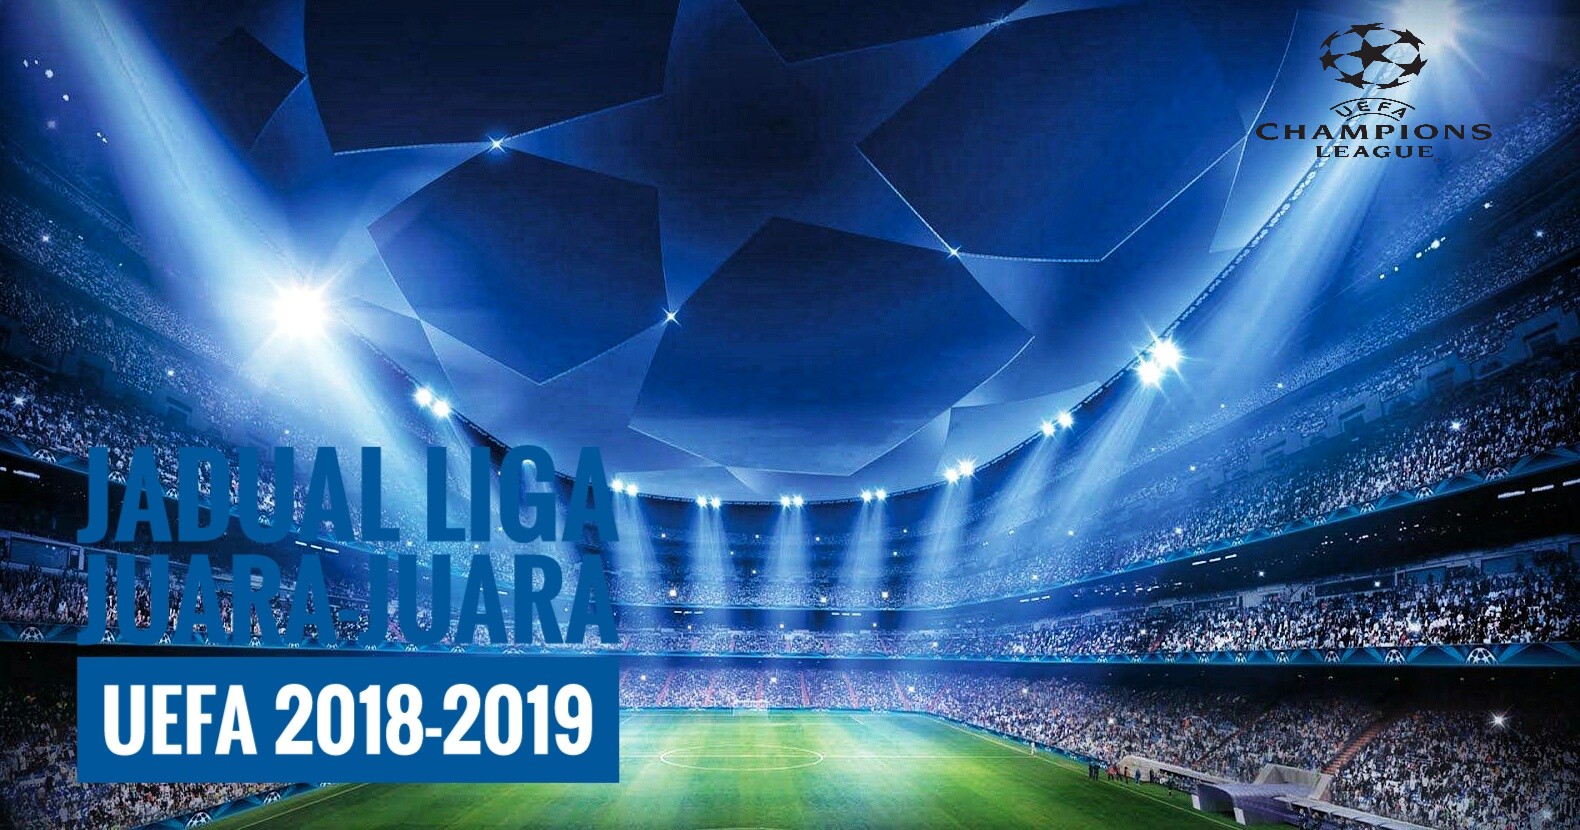 jadual uefa champion league 2019